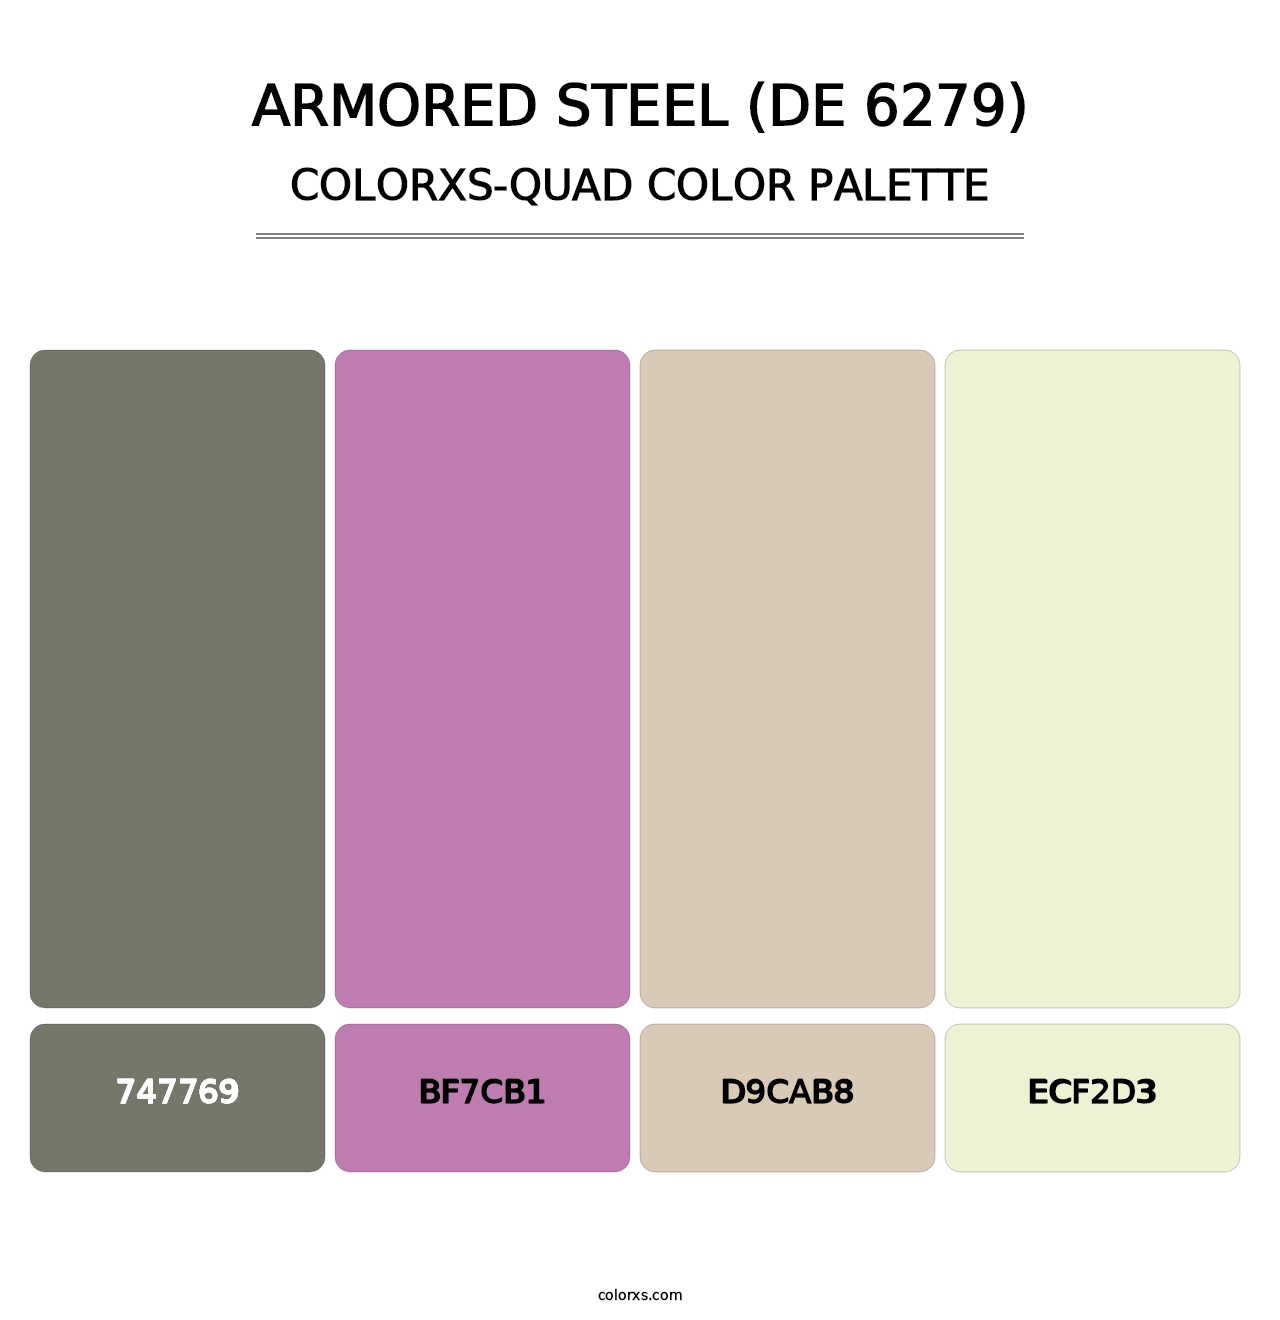 Armored Steel (DE 6279) - Colorxs Quad Palette